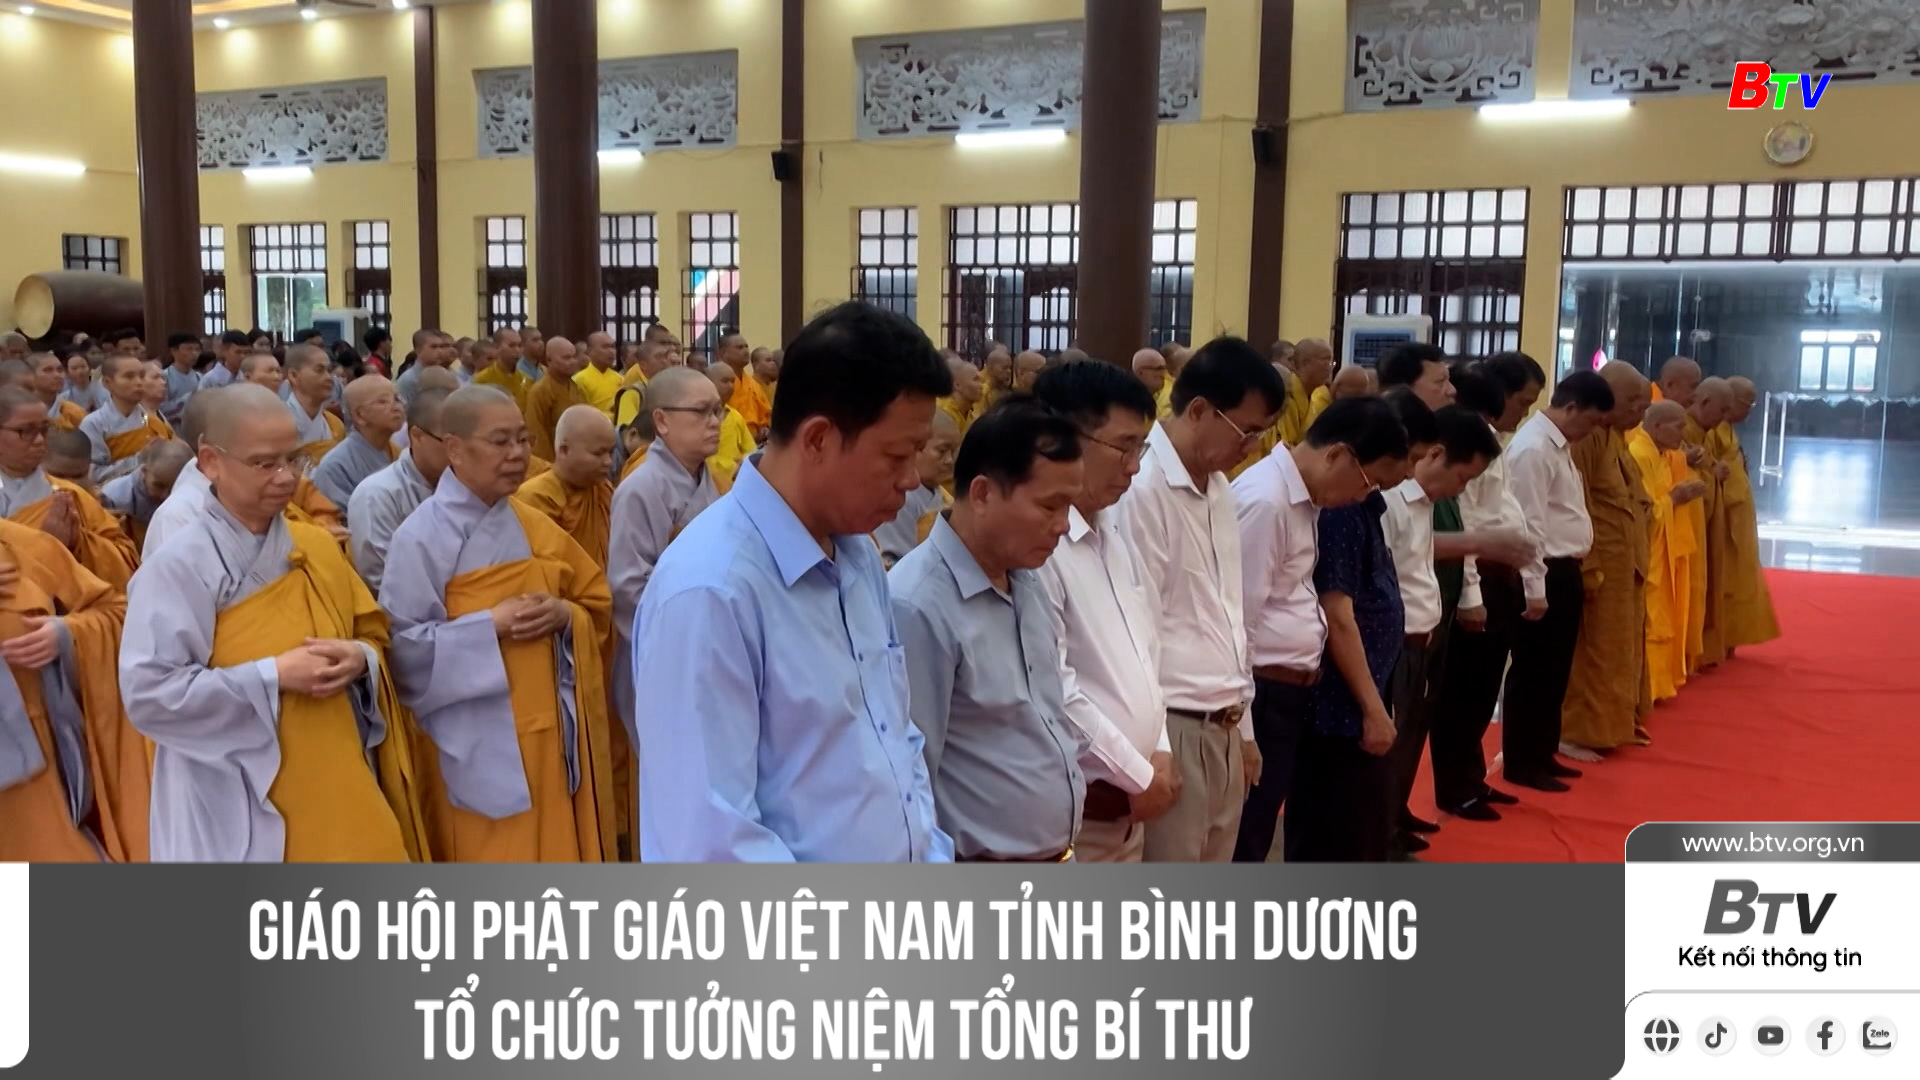 Giáo hội Phật giáo Việt Nam tỉnh Bình Dương tổ chức tưởng niệm Tổng Bí thư